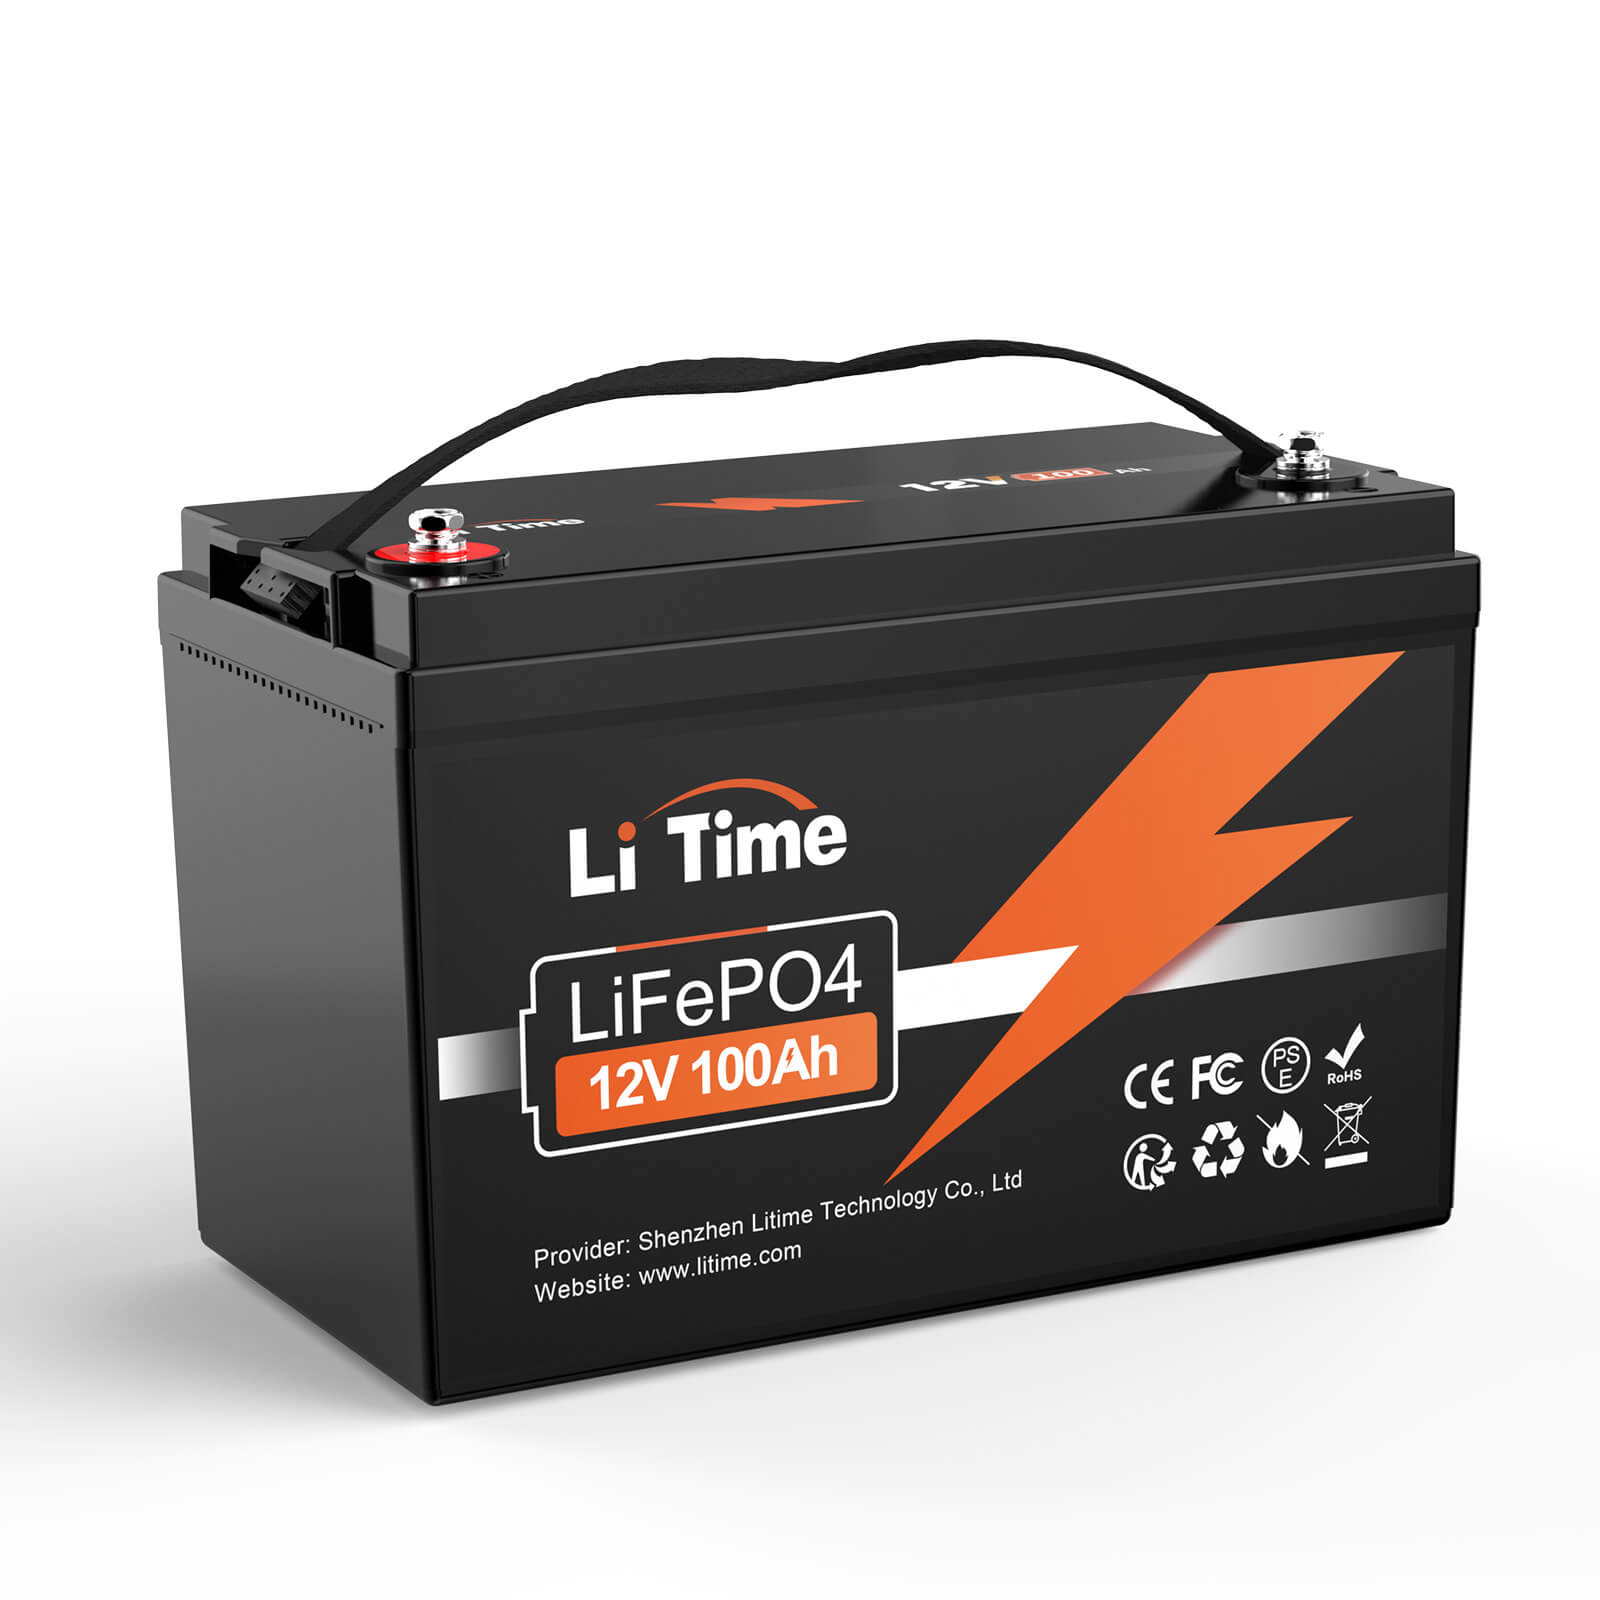 【0% TVA】Batterie au lithium LiTime 12V 100Ah LiFePO4 (UNIQUEMENT pour les bâtiments résidentiels et UNIQUEMENT en DEU - Uniquement pour les clients en Allemagne)